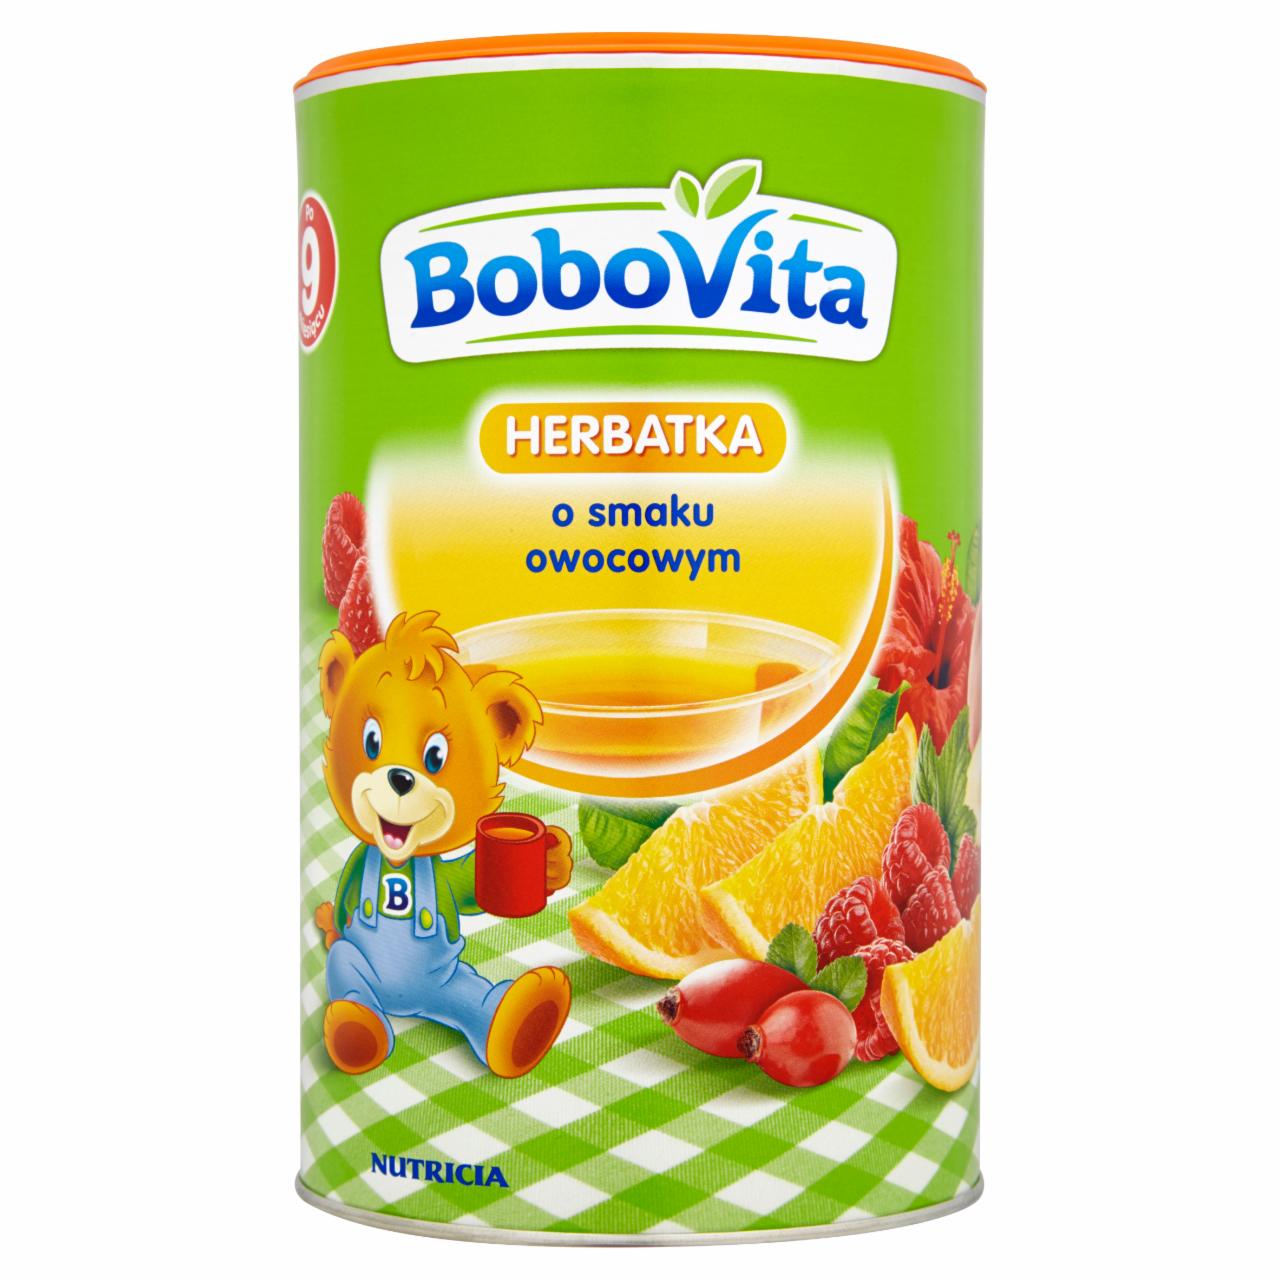 Zdjęcia - BoboVita Herbatka o smaku owocowym po 9 miesiącu 400 g